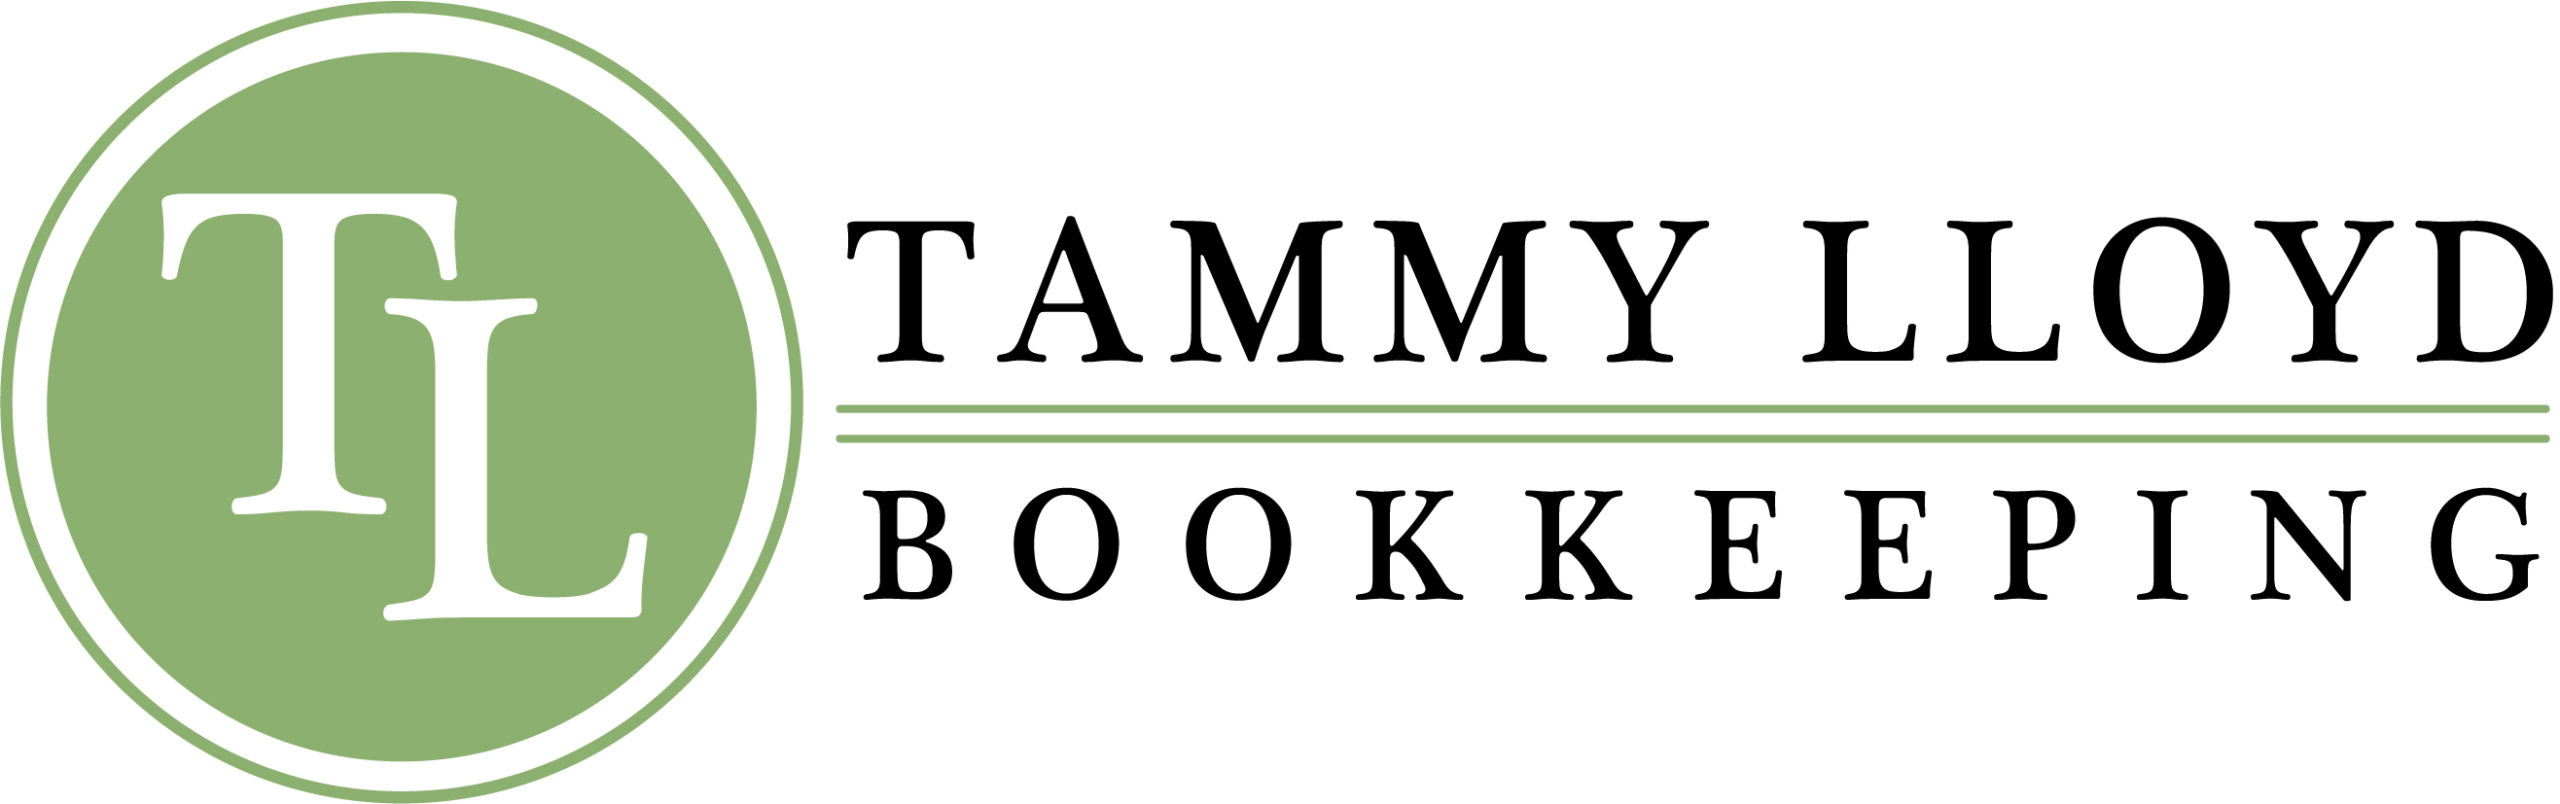 Tammy Lloyd Bookkeeping